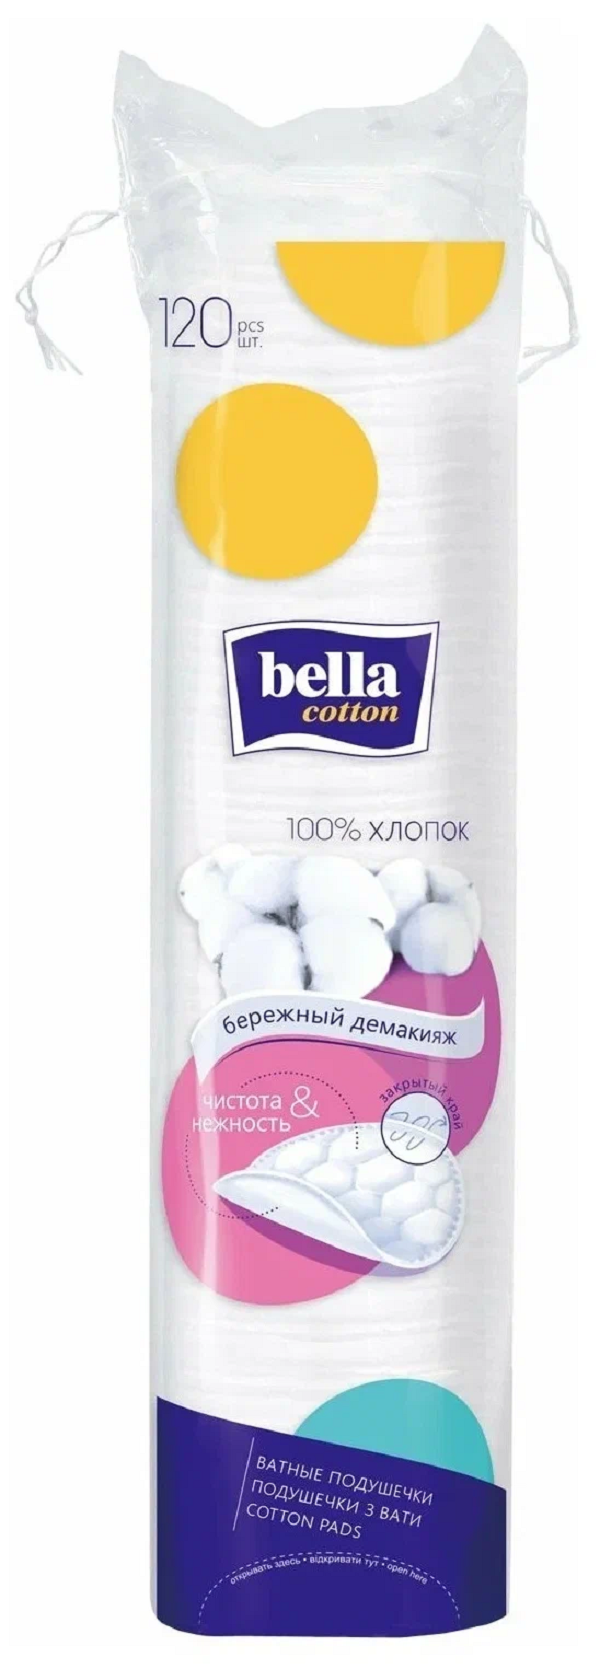 Диски ватные Bella Cotton хлопок, 120 шт. cotton flower ватные диски косметические 140